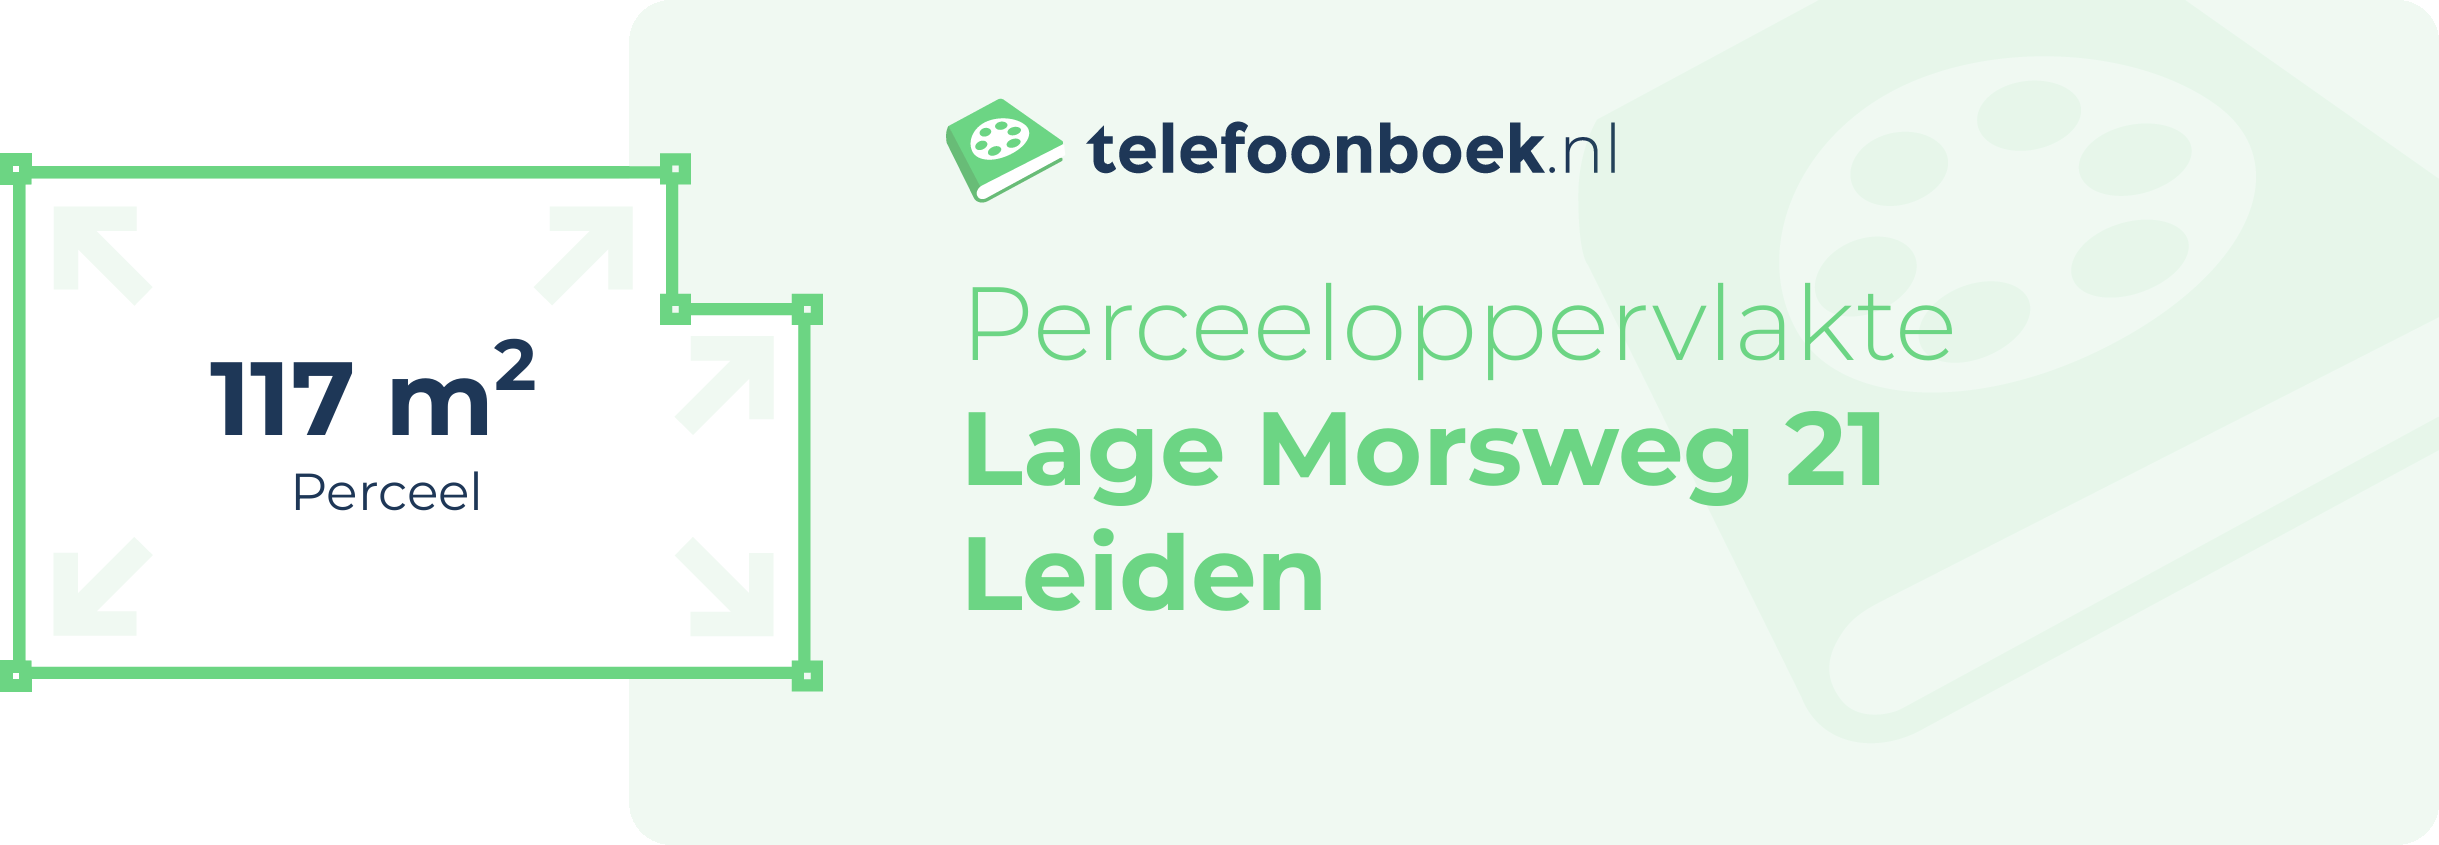 Perceeloppervlakte Lage Morsweg 21 Leiden